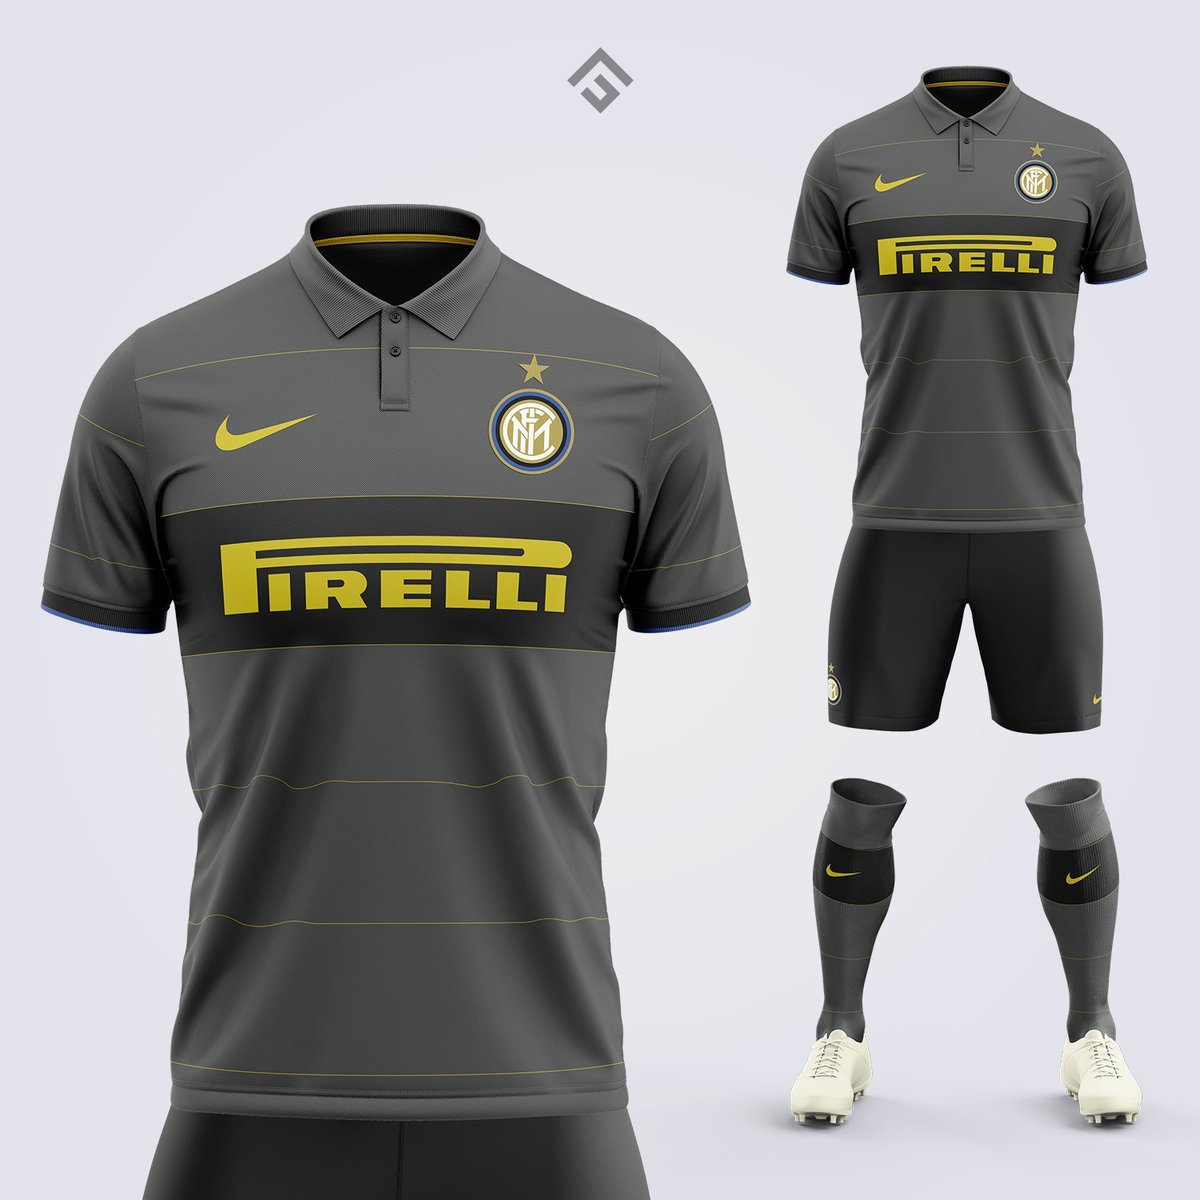 Ce concept de maillot pour l'Inter Milan 🔵⚫

Vous validez ? 👀

📸 @_fcdesign